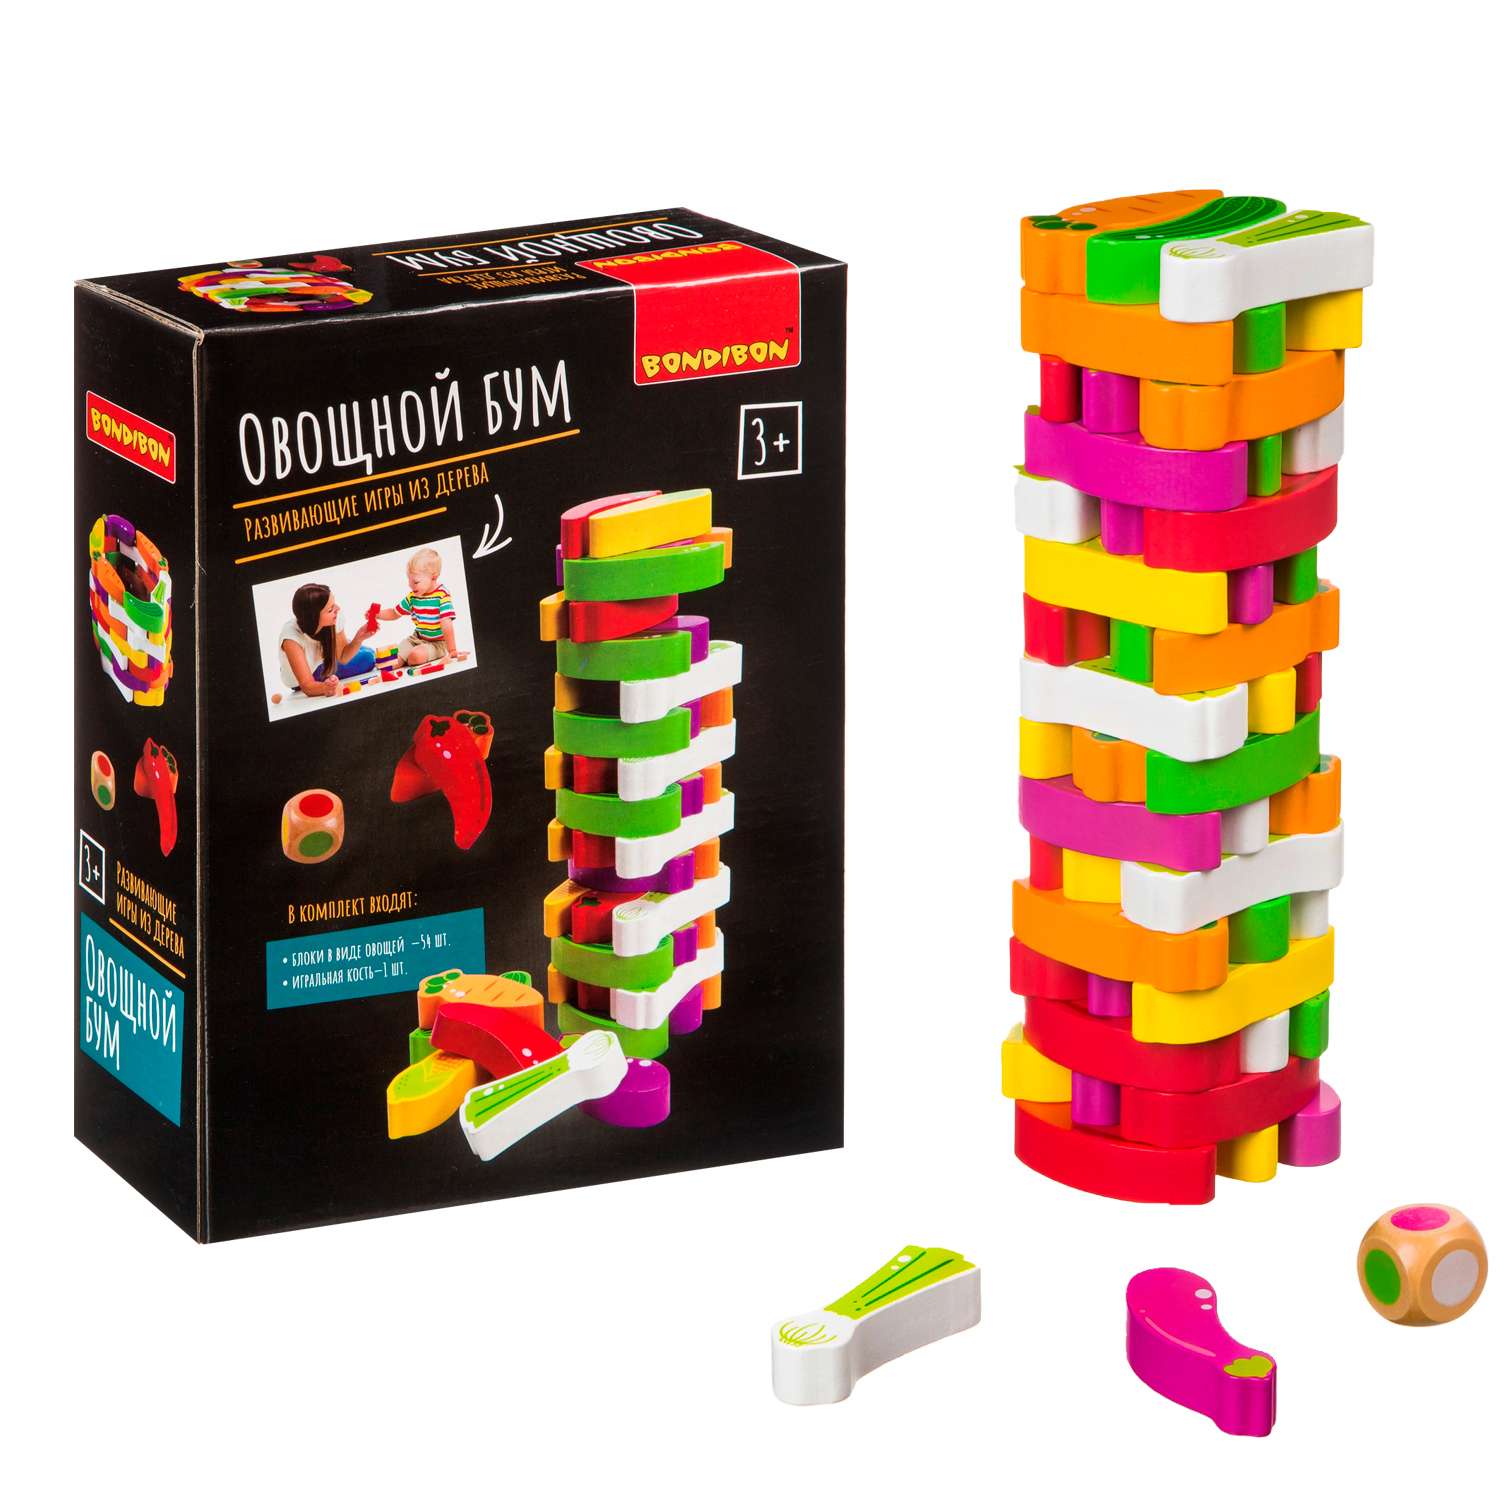 Развивающая игра из дерева BONDIBON Игра-баланс Овощной Бум башня из овощей - фото 1